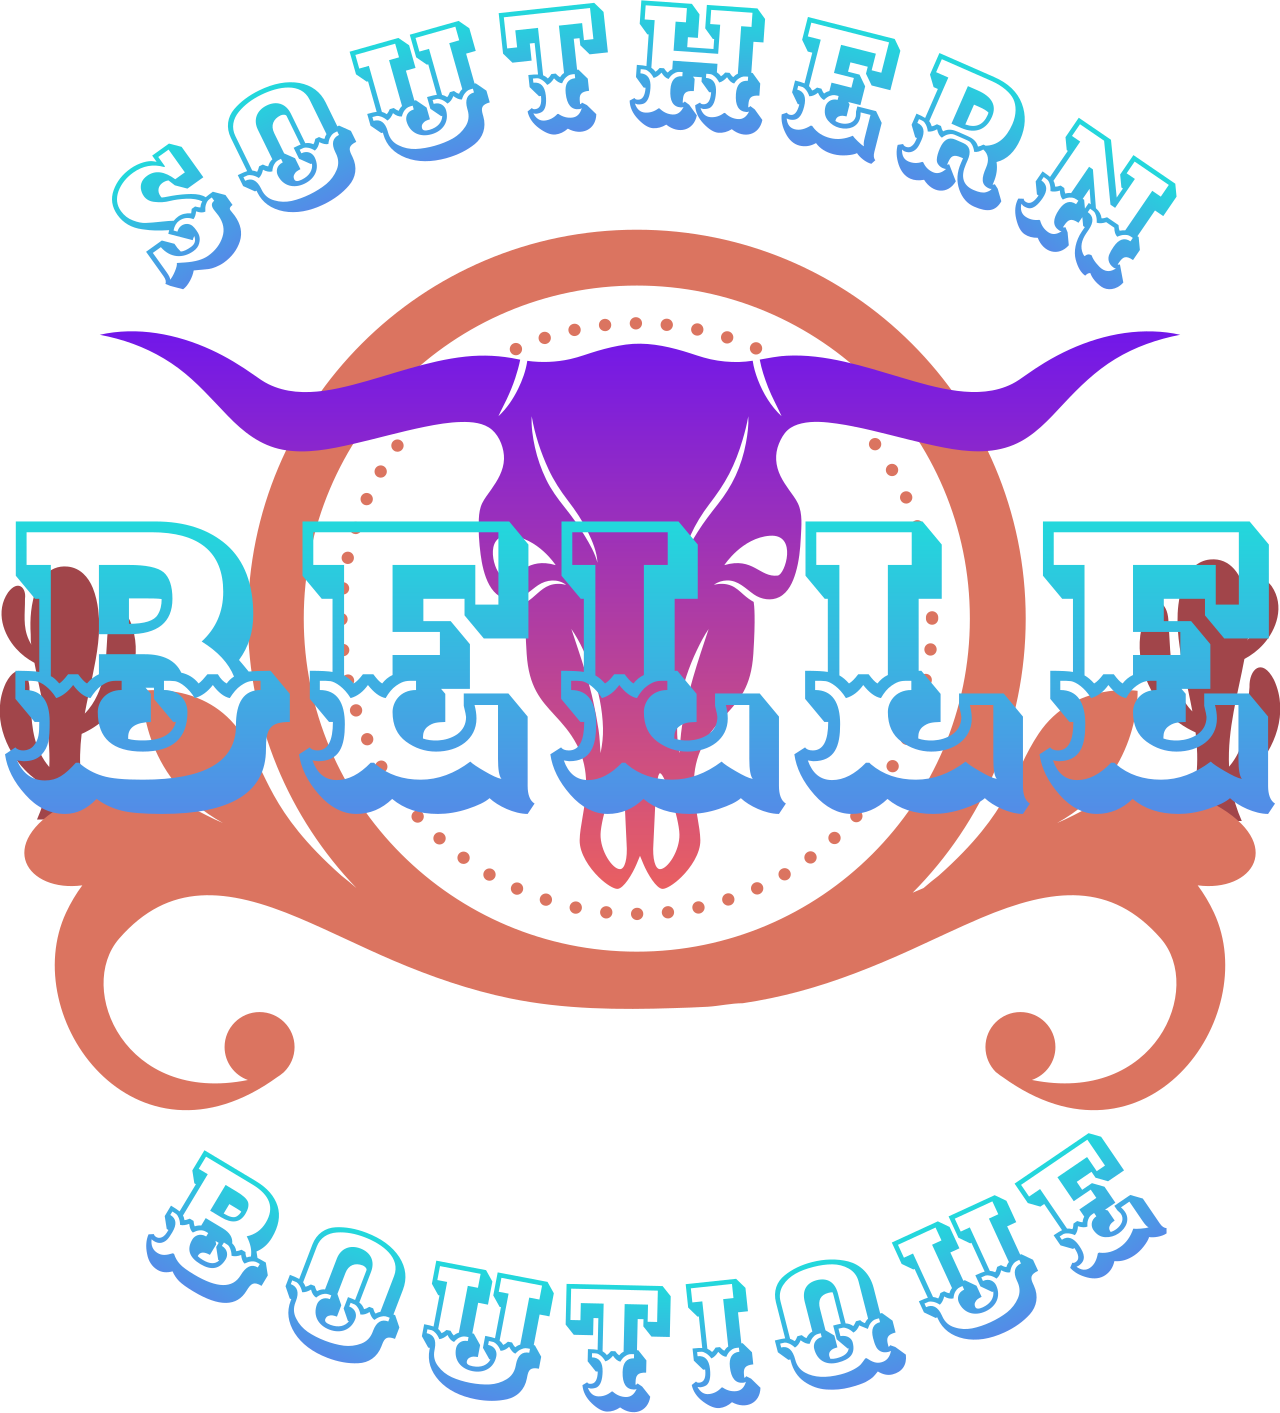 Southern's logo